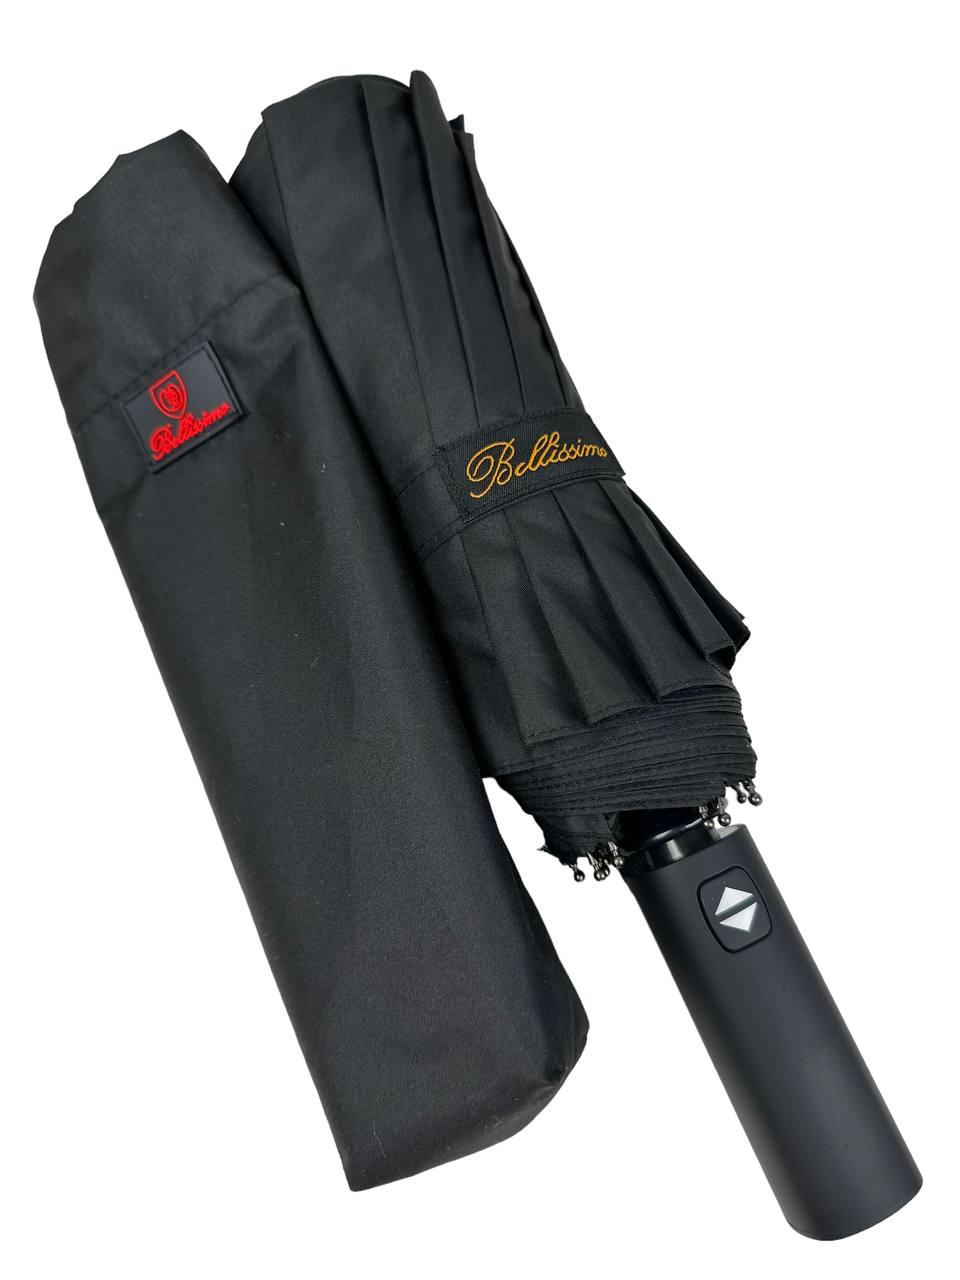 Мужской складной зонтик полный автомат Bellissima 105 см черный - фото 5